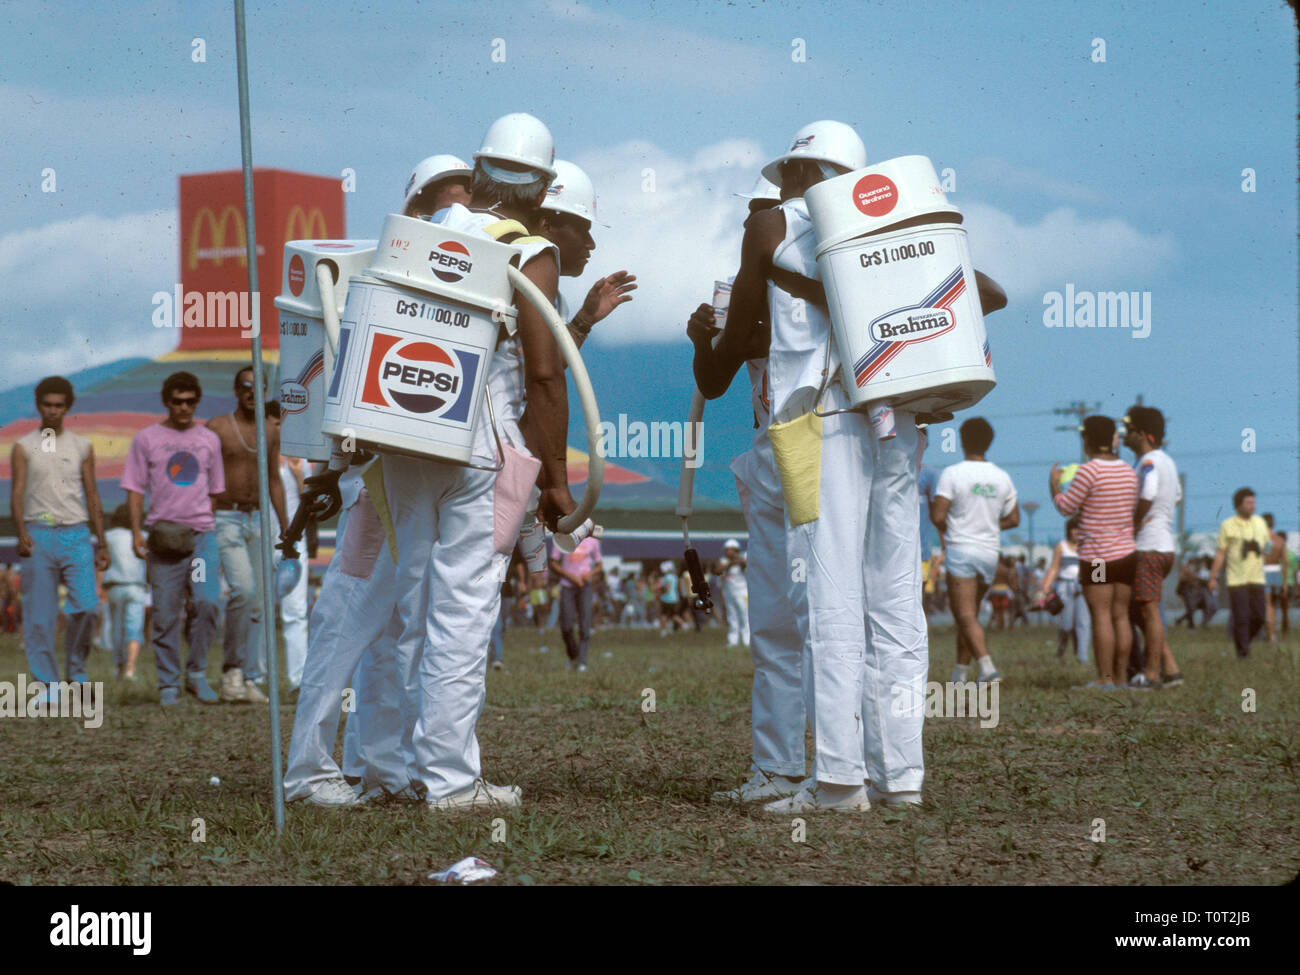 Les travailleurs de l'Rock in Rio festival de musique je sont représentés portant des distributeur de boissons sur le dos. Banque D'Images